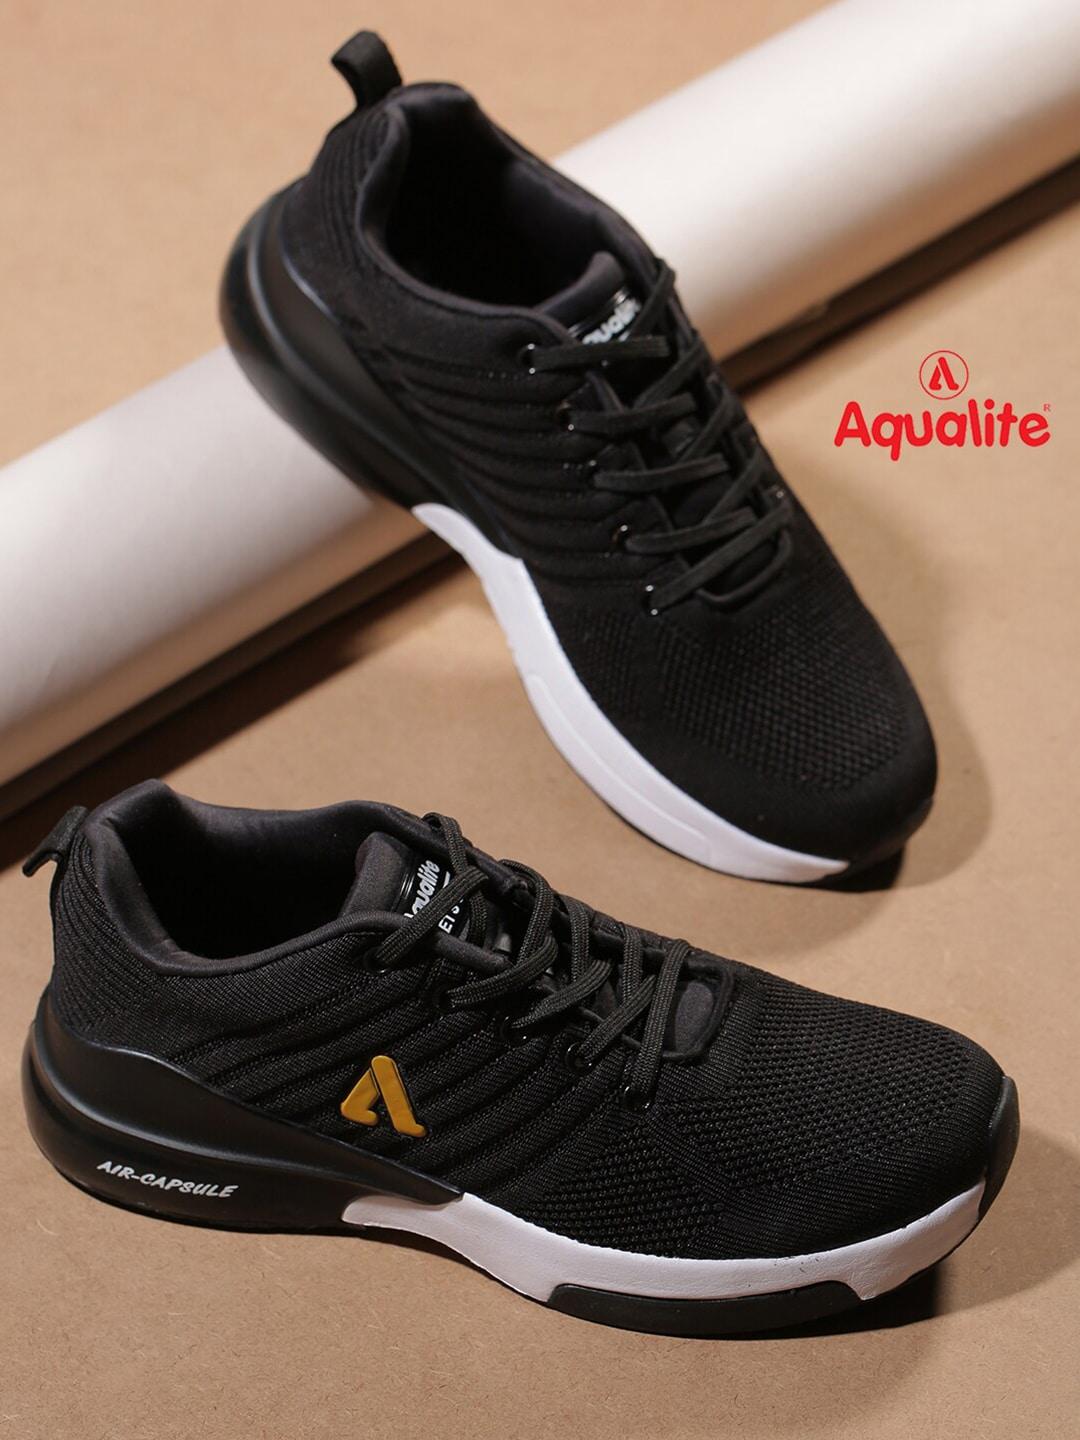 aqualite-men-black-mesh-walking-non-marking-shoes